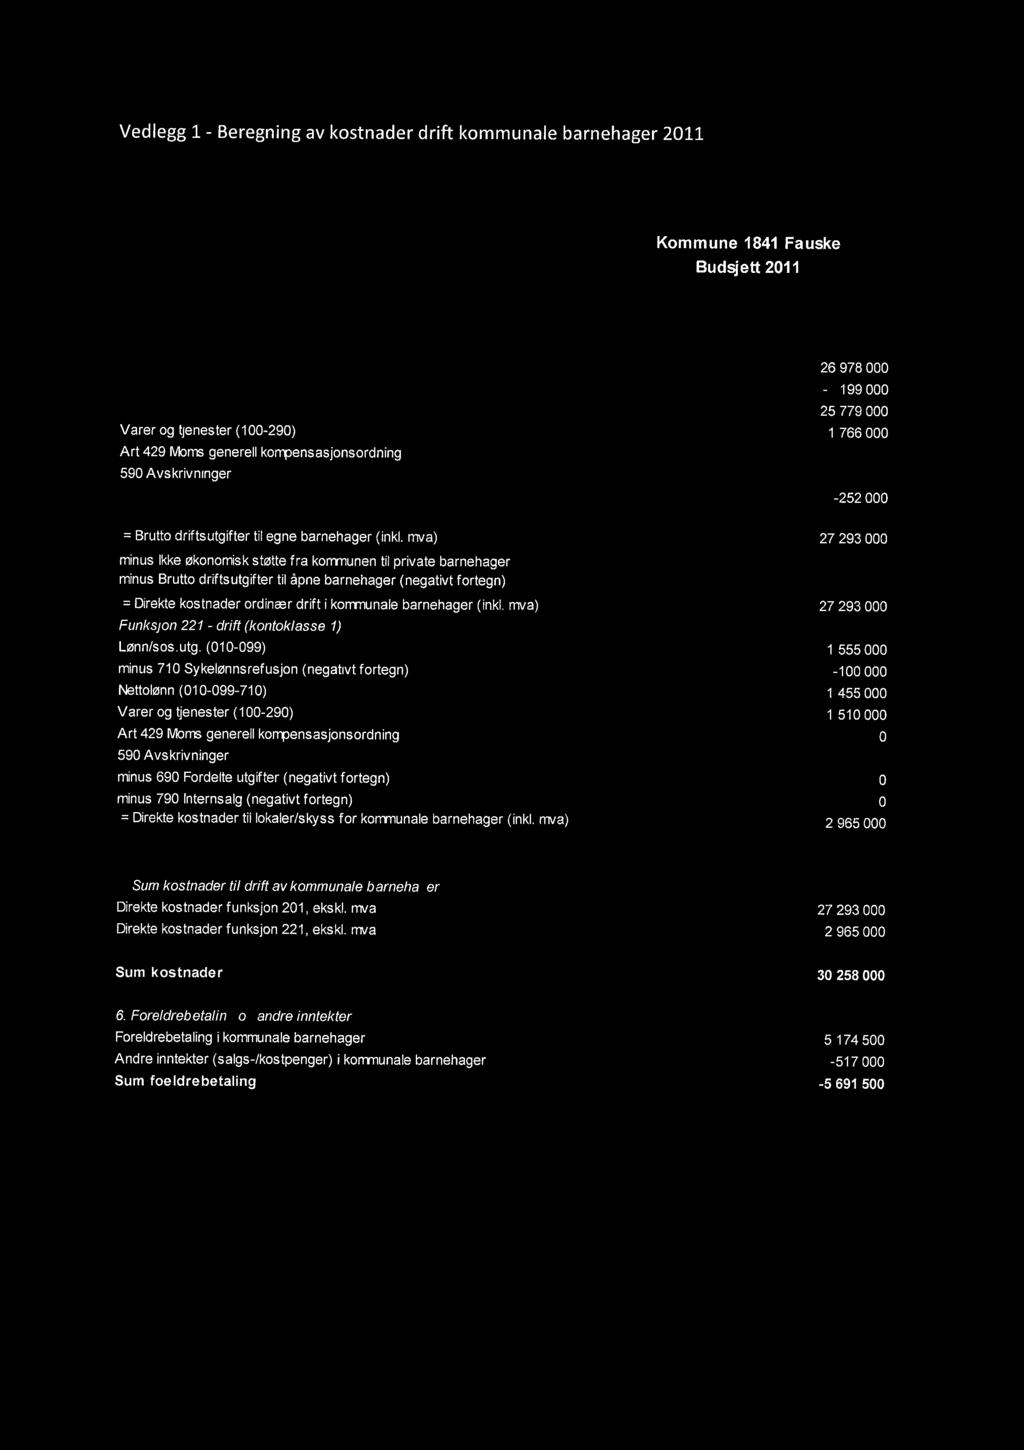 Vedlegg 1- Beregning av kostnader drift kommunale barnehager 2011 Grunnlagsdata: 3. Kostnader i kommunale barnehager Funksjon 201 - drift (kontoklasse 1) Kommune 1841 Fauske Budsjett 2011 Lønn/sos.